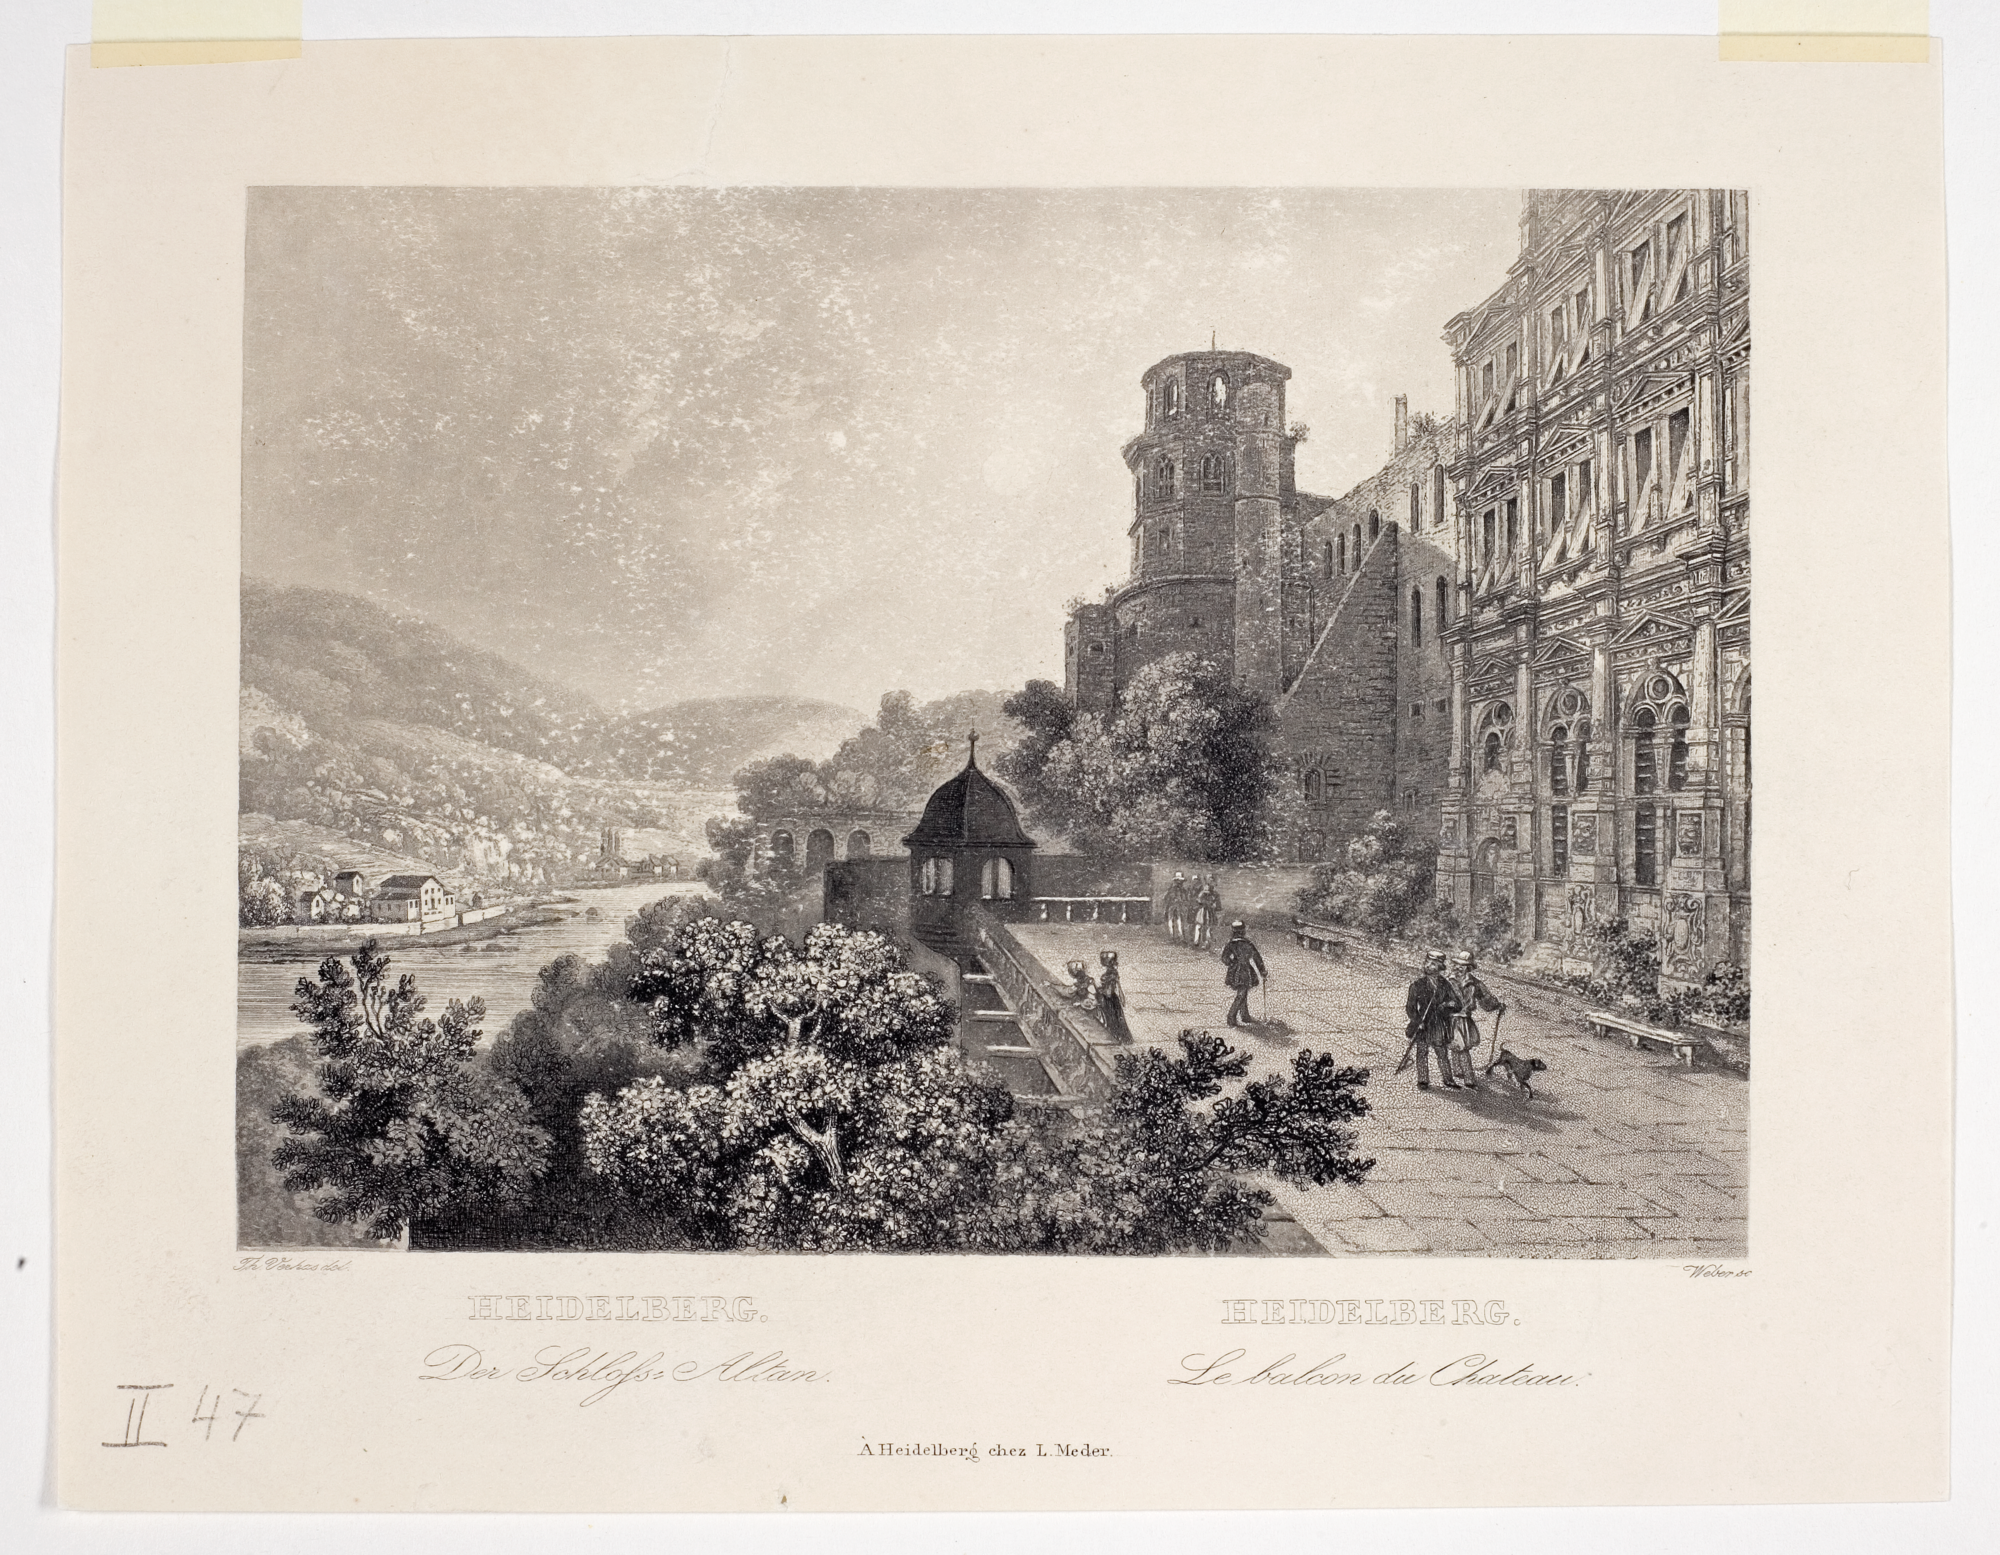 Schloss, Altan (Quelle: Bildindex der Kunst und Architektur)